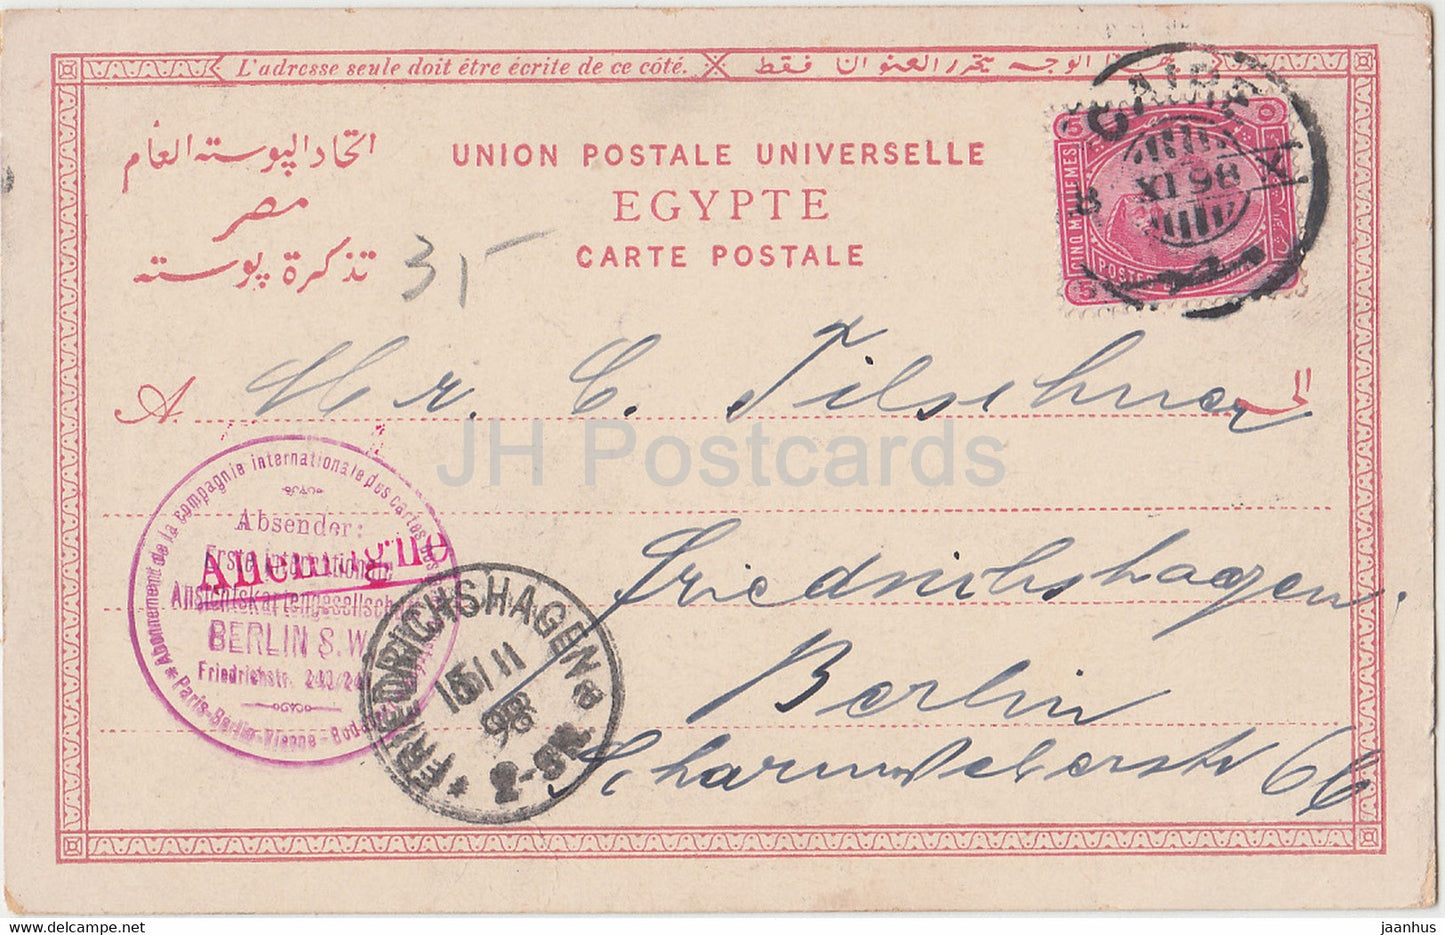 Cairo - view - Von des gelben Wustensandes Gluthen - Mirza Schaffy - old postcard - 1898 - Egypt - used